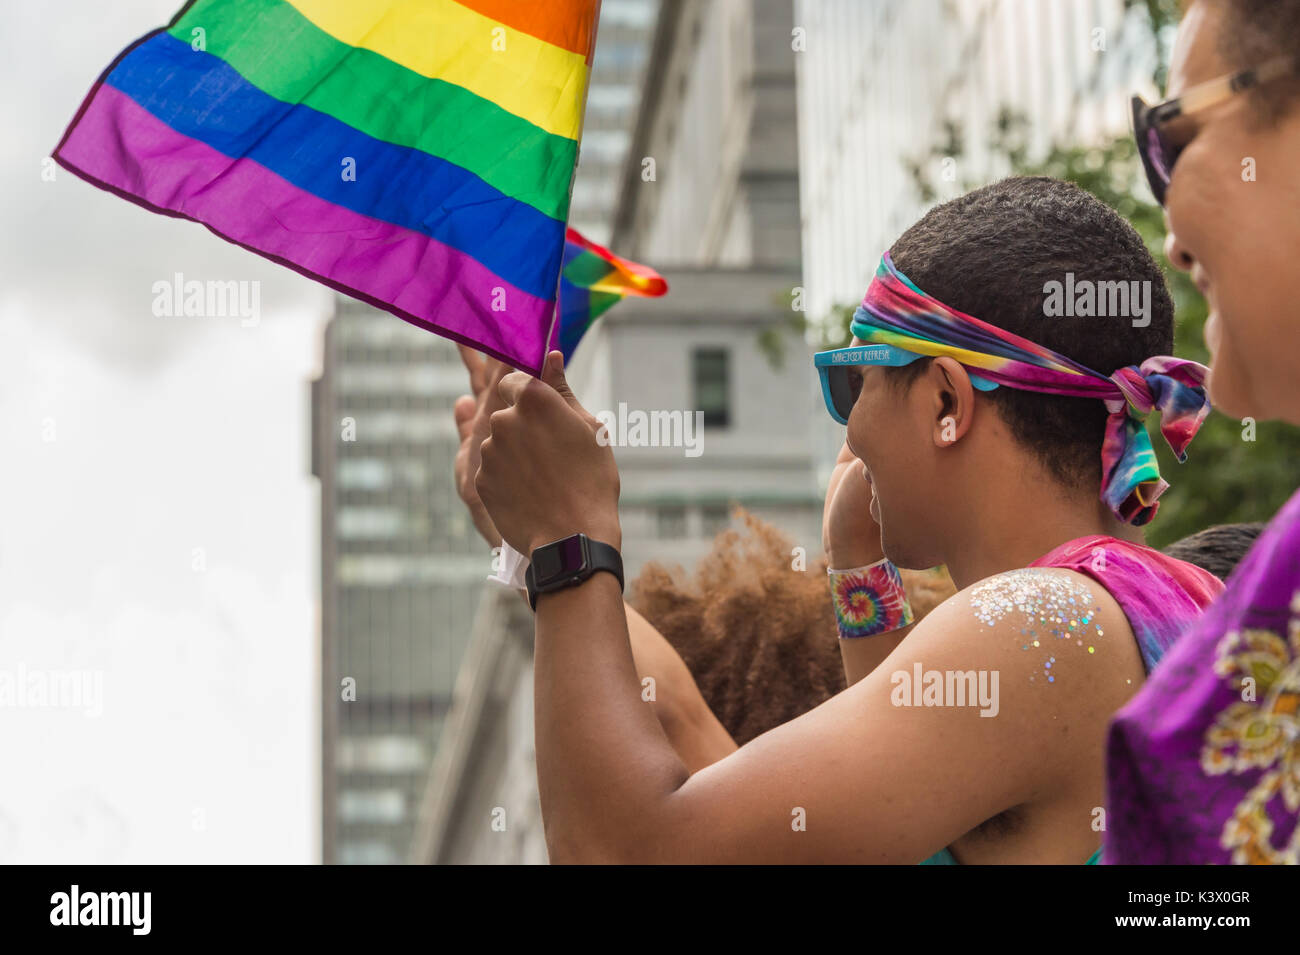 Montréal, Canada - 20 août 2017 : spectateurs holding gay rainbow flags à la parade de la Fierté gaie de Montréal Banque D'Images